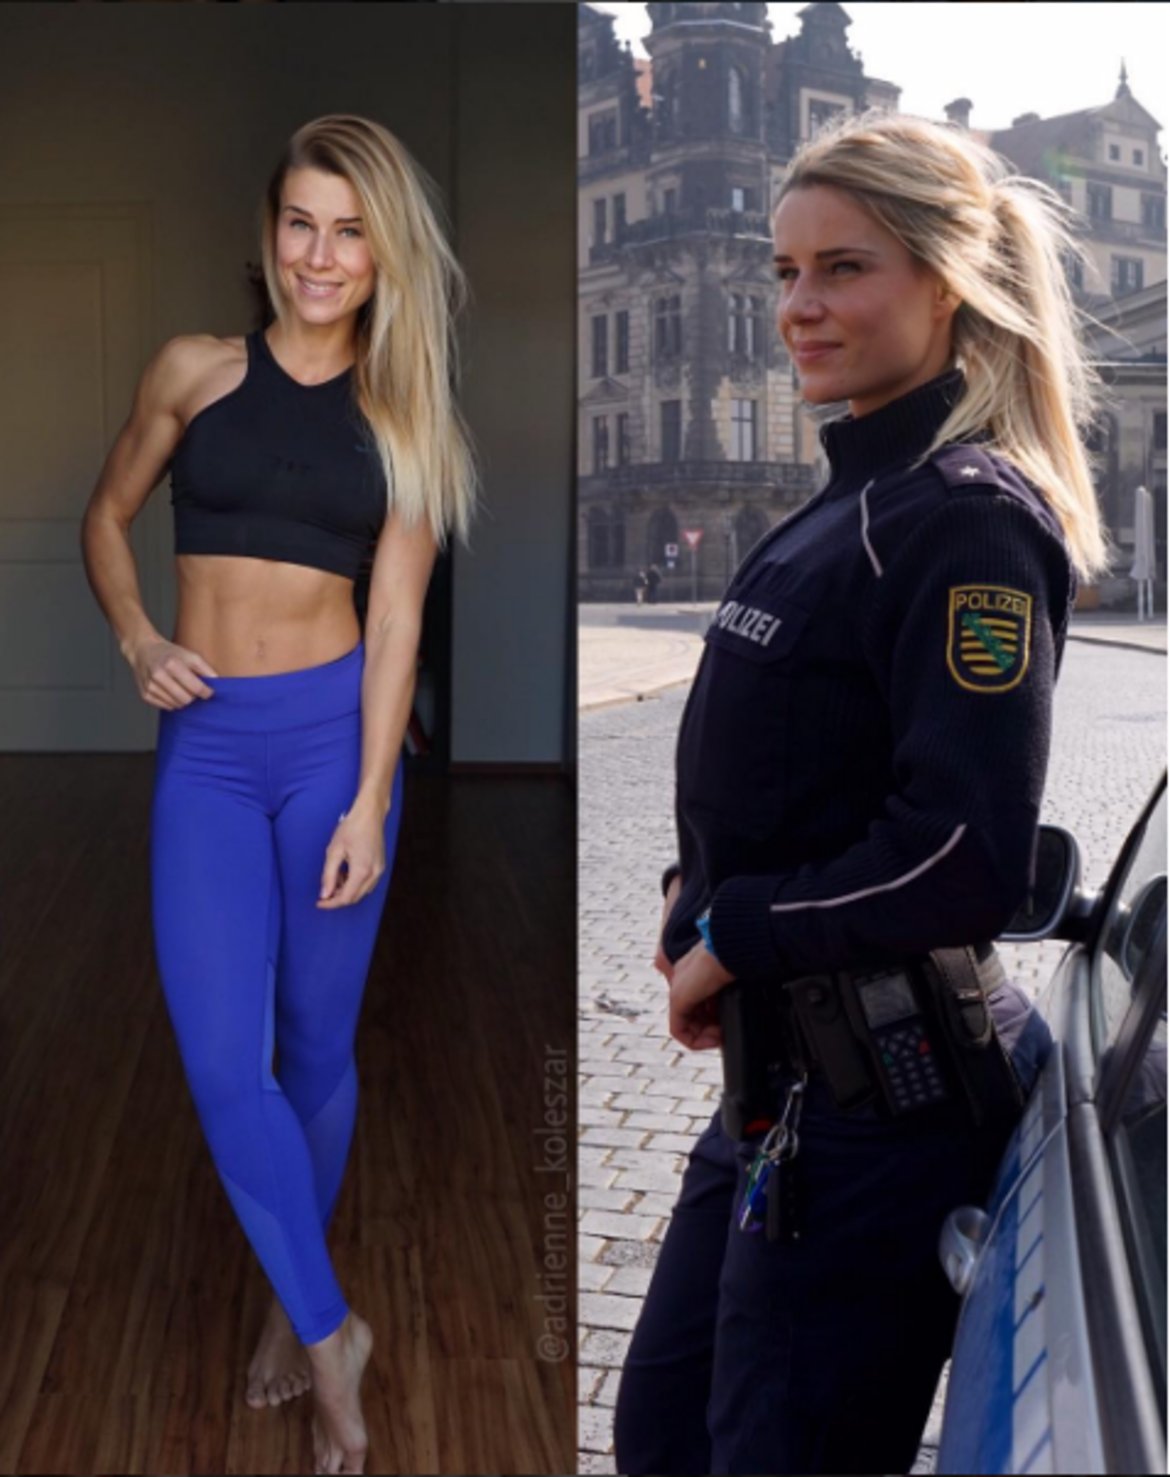 Полицайката Адриене Колешар
Тя е 32-годишна германка, която се грижи за тялото си активно във фитнеса, а в личния си живот е полицай. Занимава се със случаи на домашно насилие, обществени свади и пътни инциденти в град Дрезден.